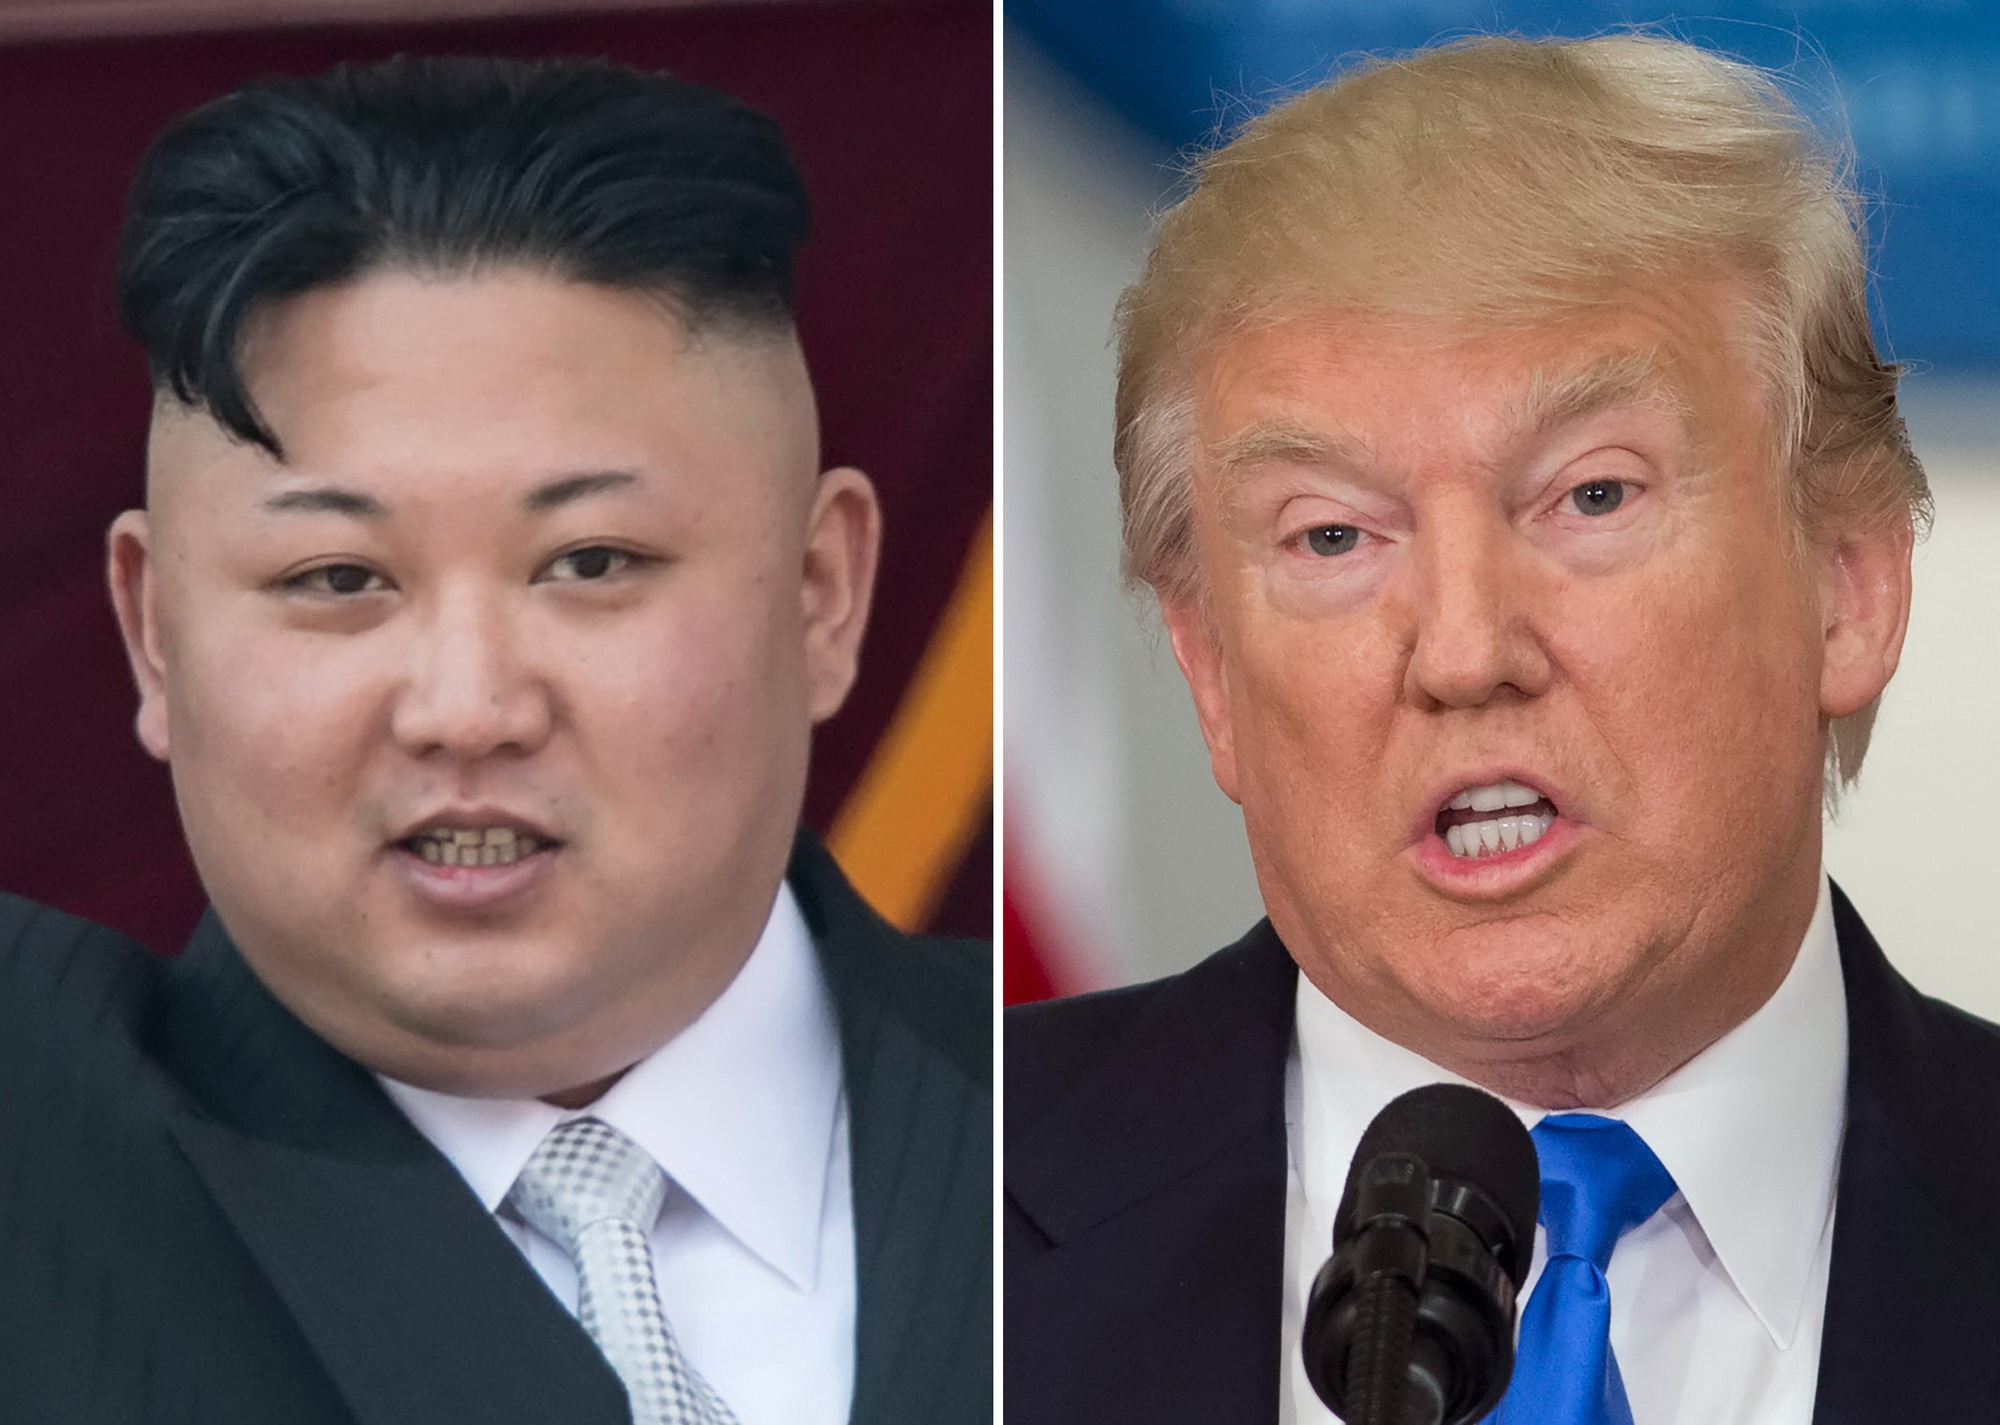 Tổng thống Mỹ Donald Trump (phải) và nhà lãnh đạo Triều Tiên Kim Jong-Un. (Nguồn: AFP/TTXVN)